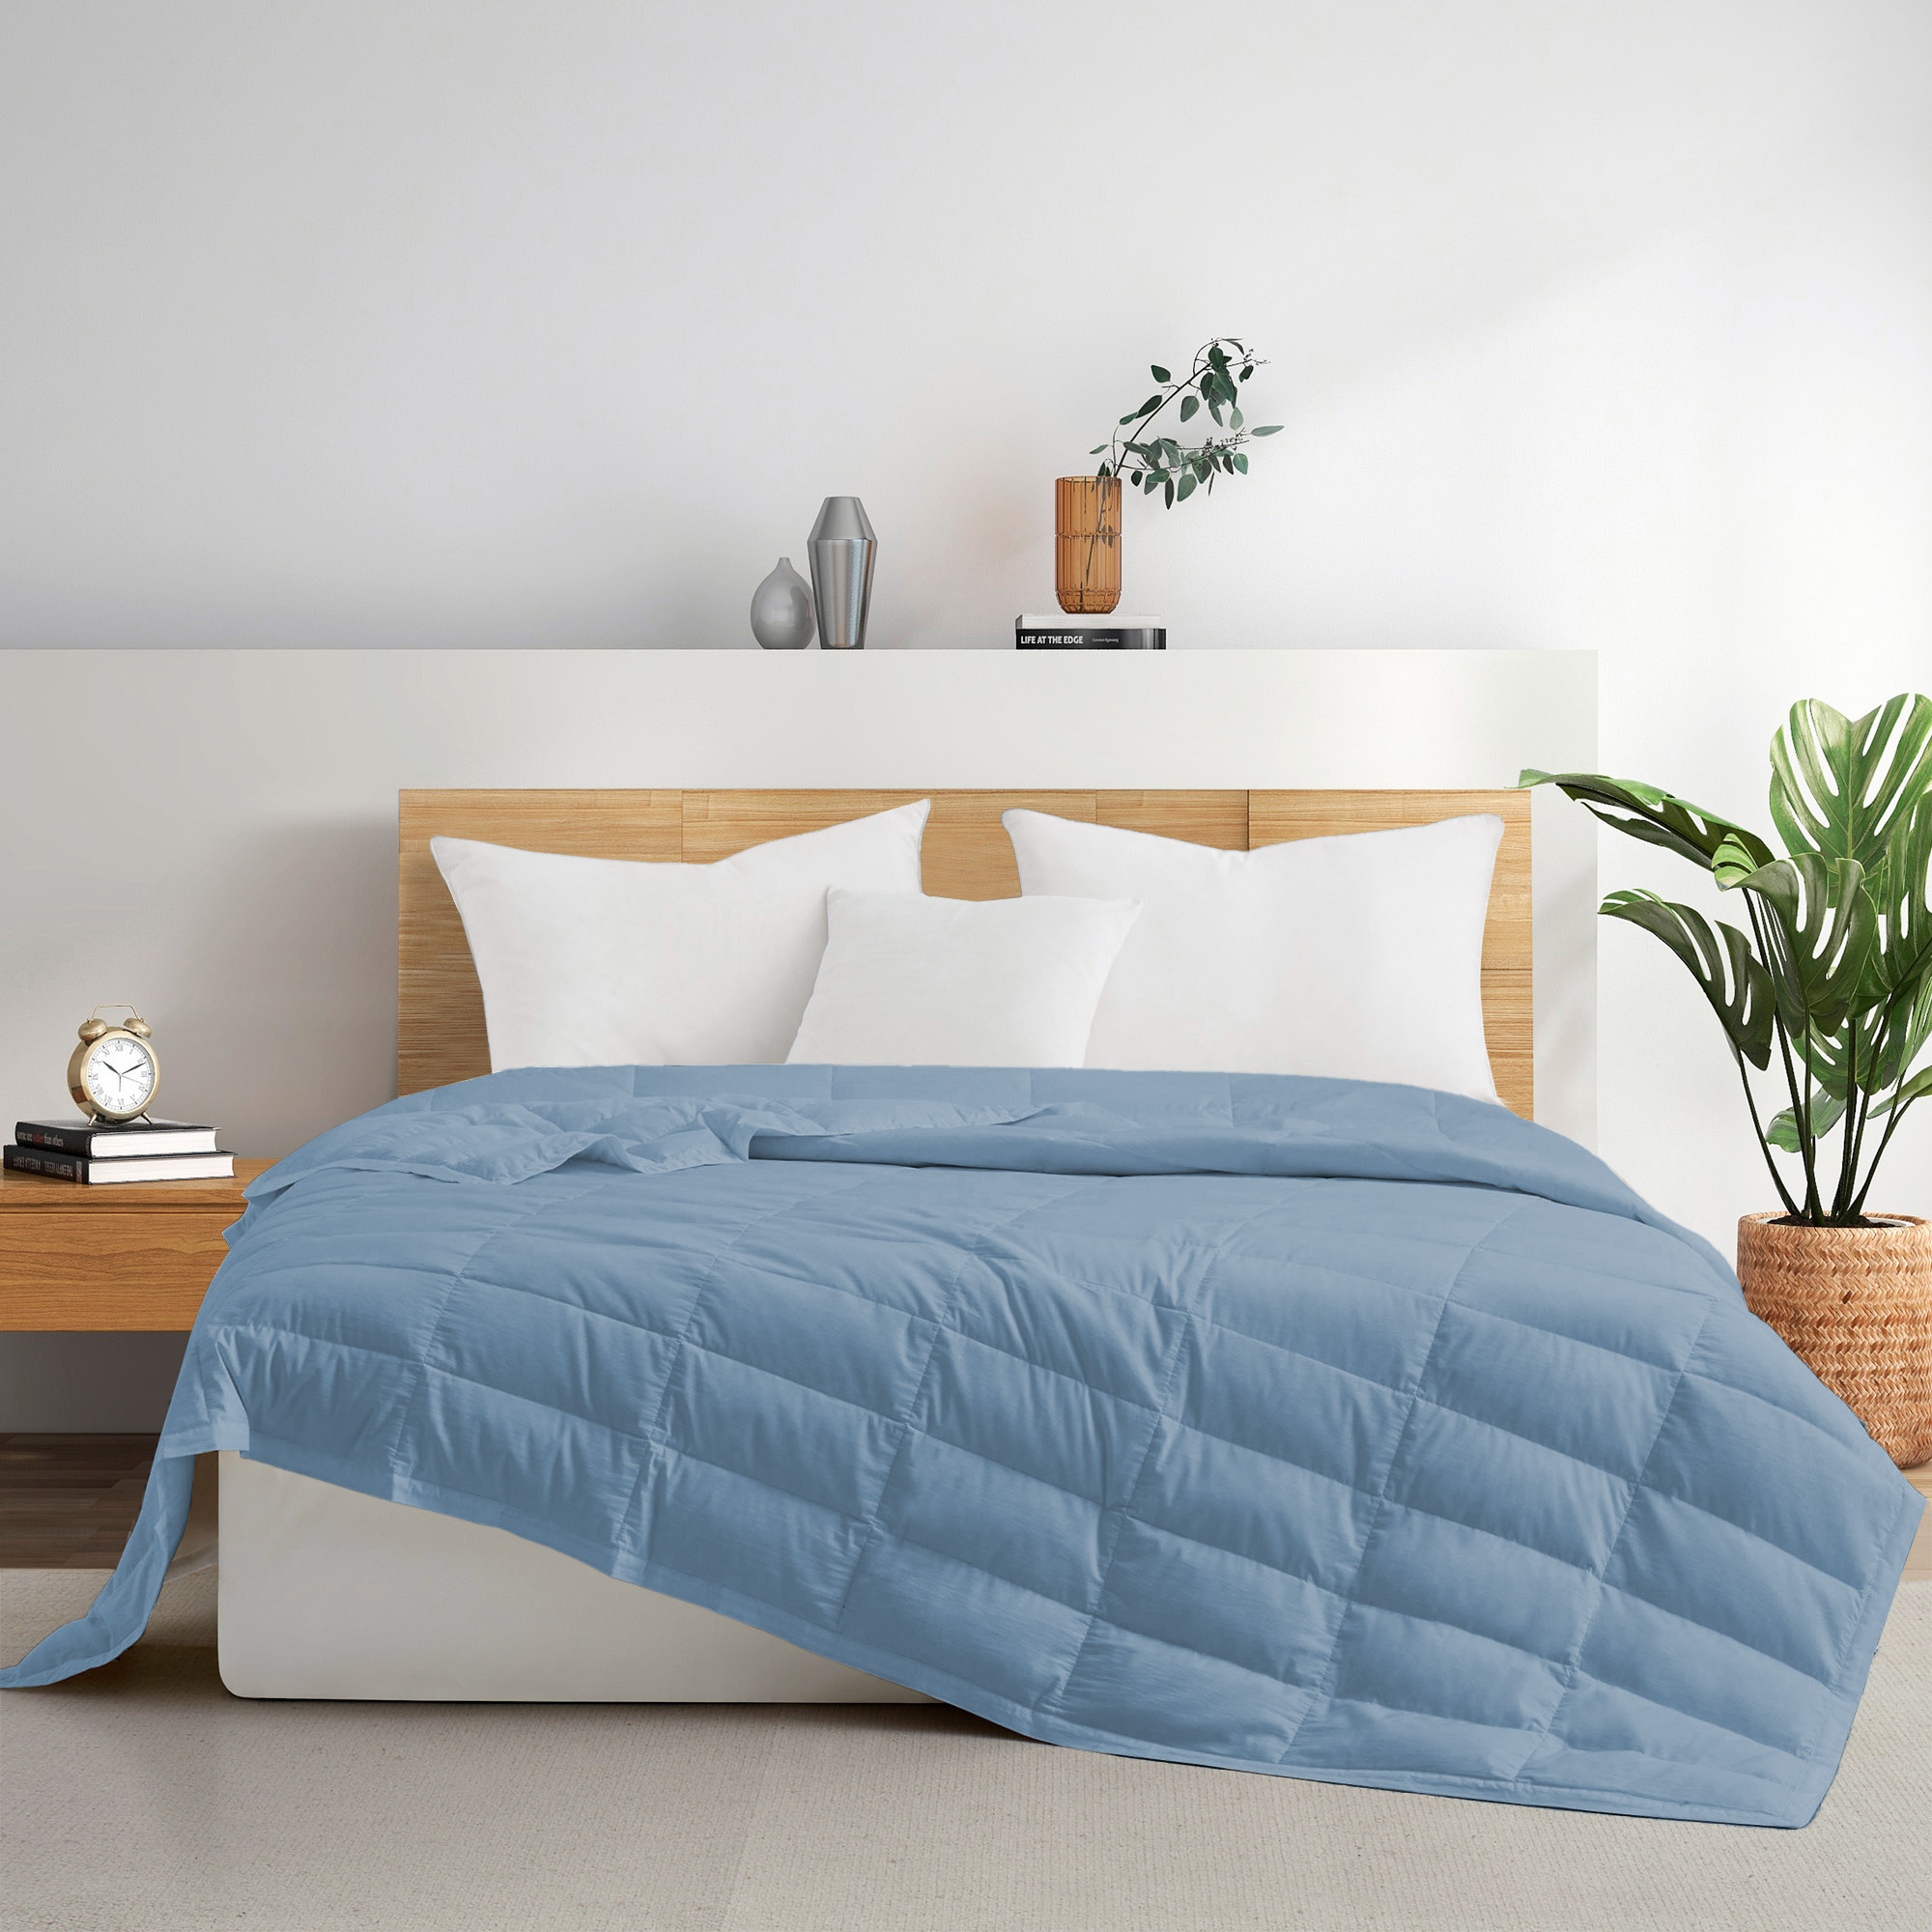 TENCELâ¢ Lyocell Lightweight Cooling Down Blanket-Luxurious Comfort Summer Blanket - Starlight Blue, King